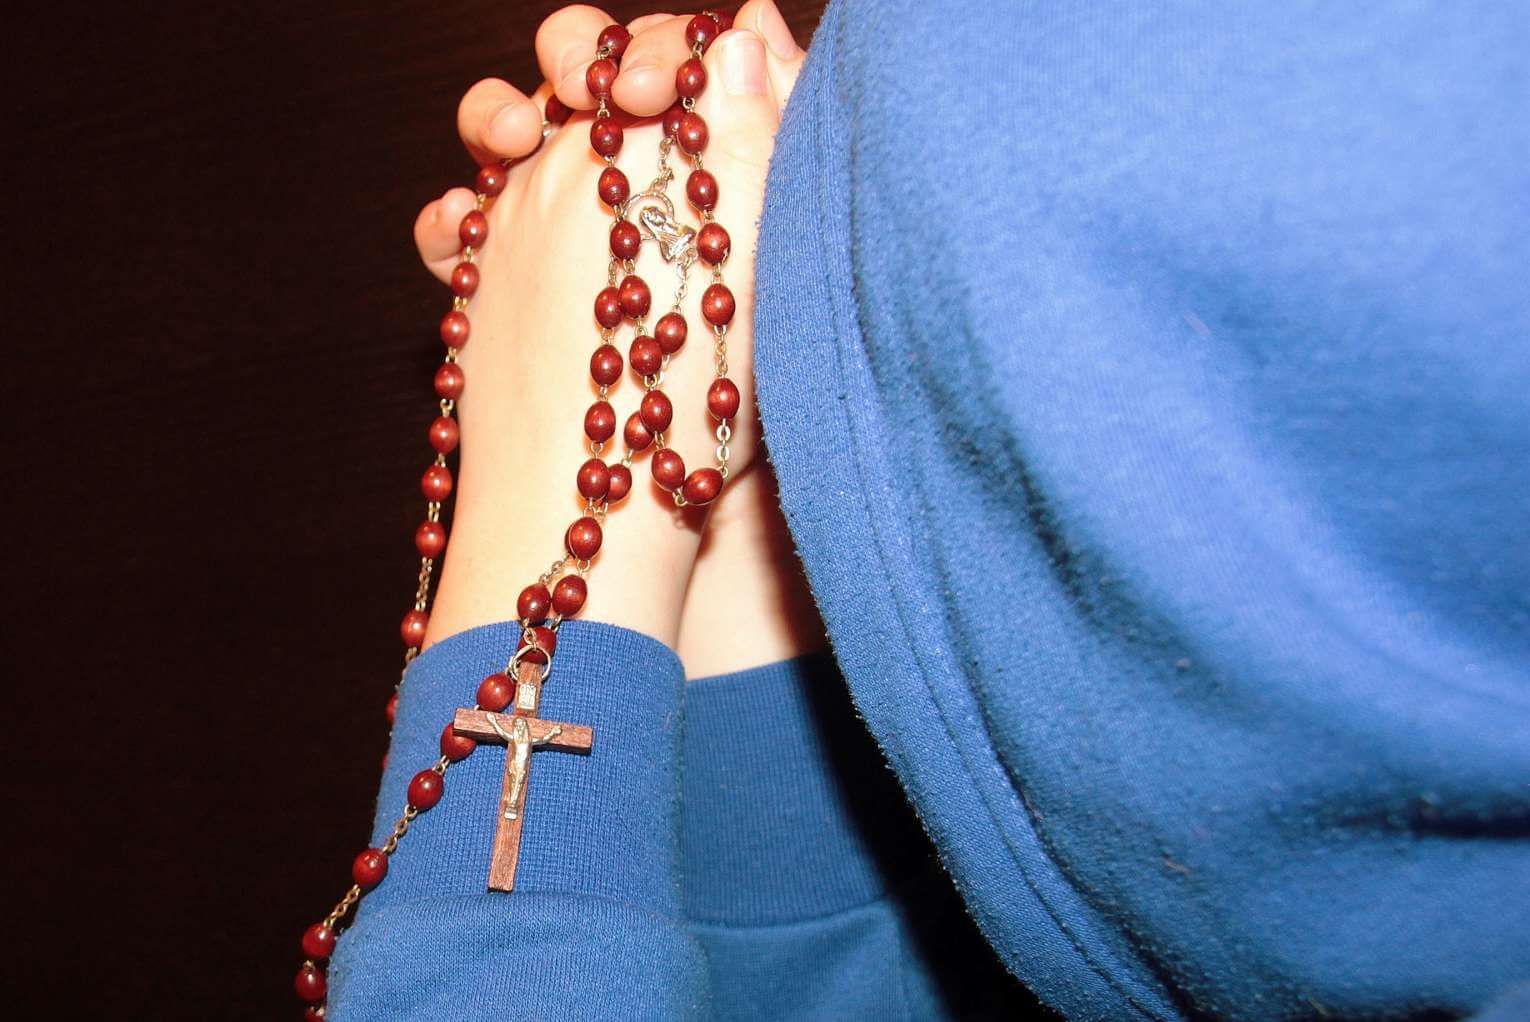 5 Reasons I No Longer Pray the Rosary